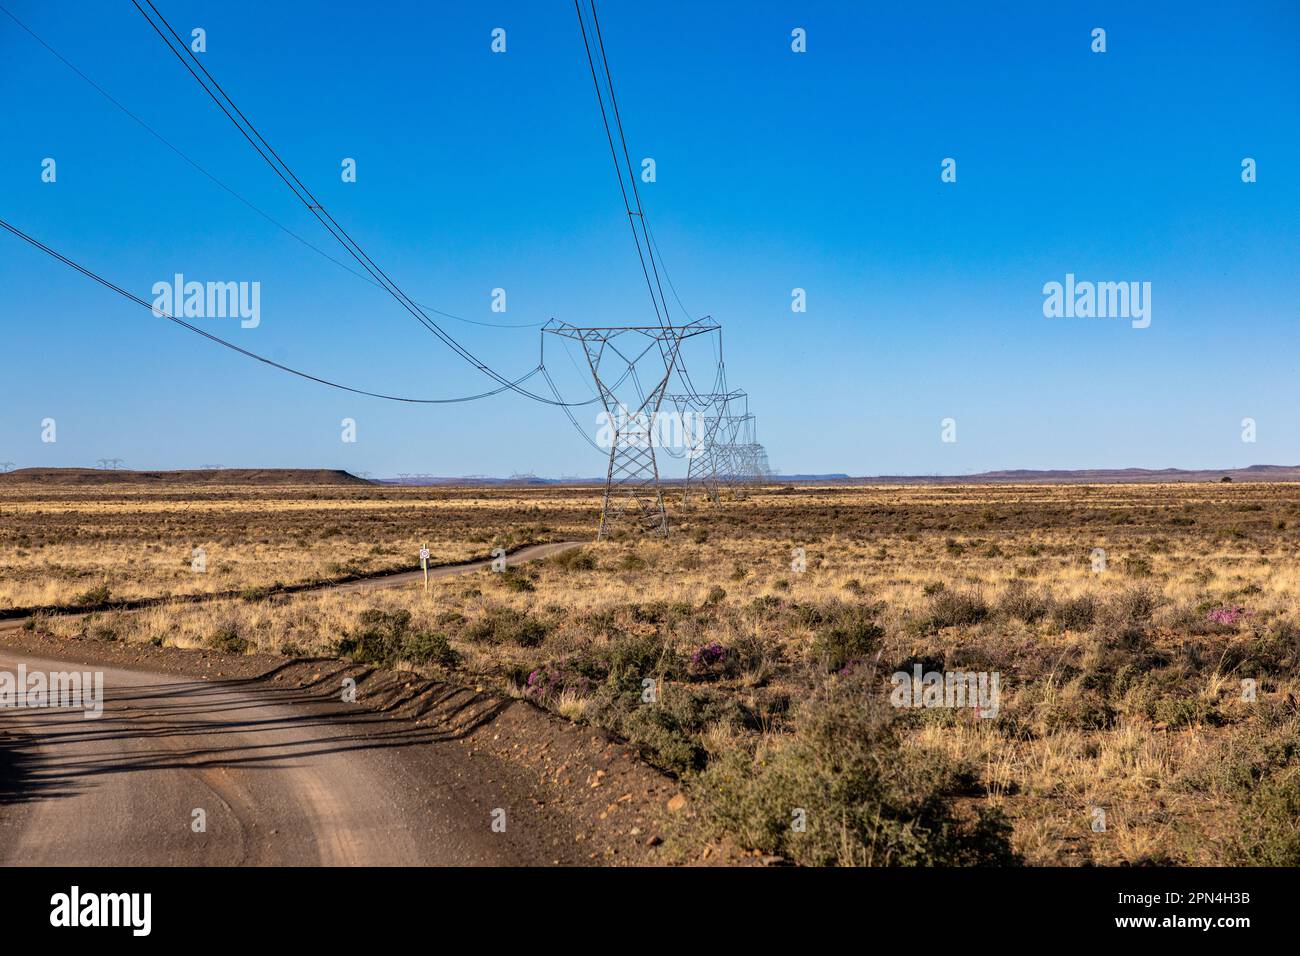 Pylônes électriques haute tension dans la région semi-aride de Karoo en Afrique du Sud dans une perspective décroissante. Banque D'Images